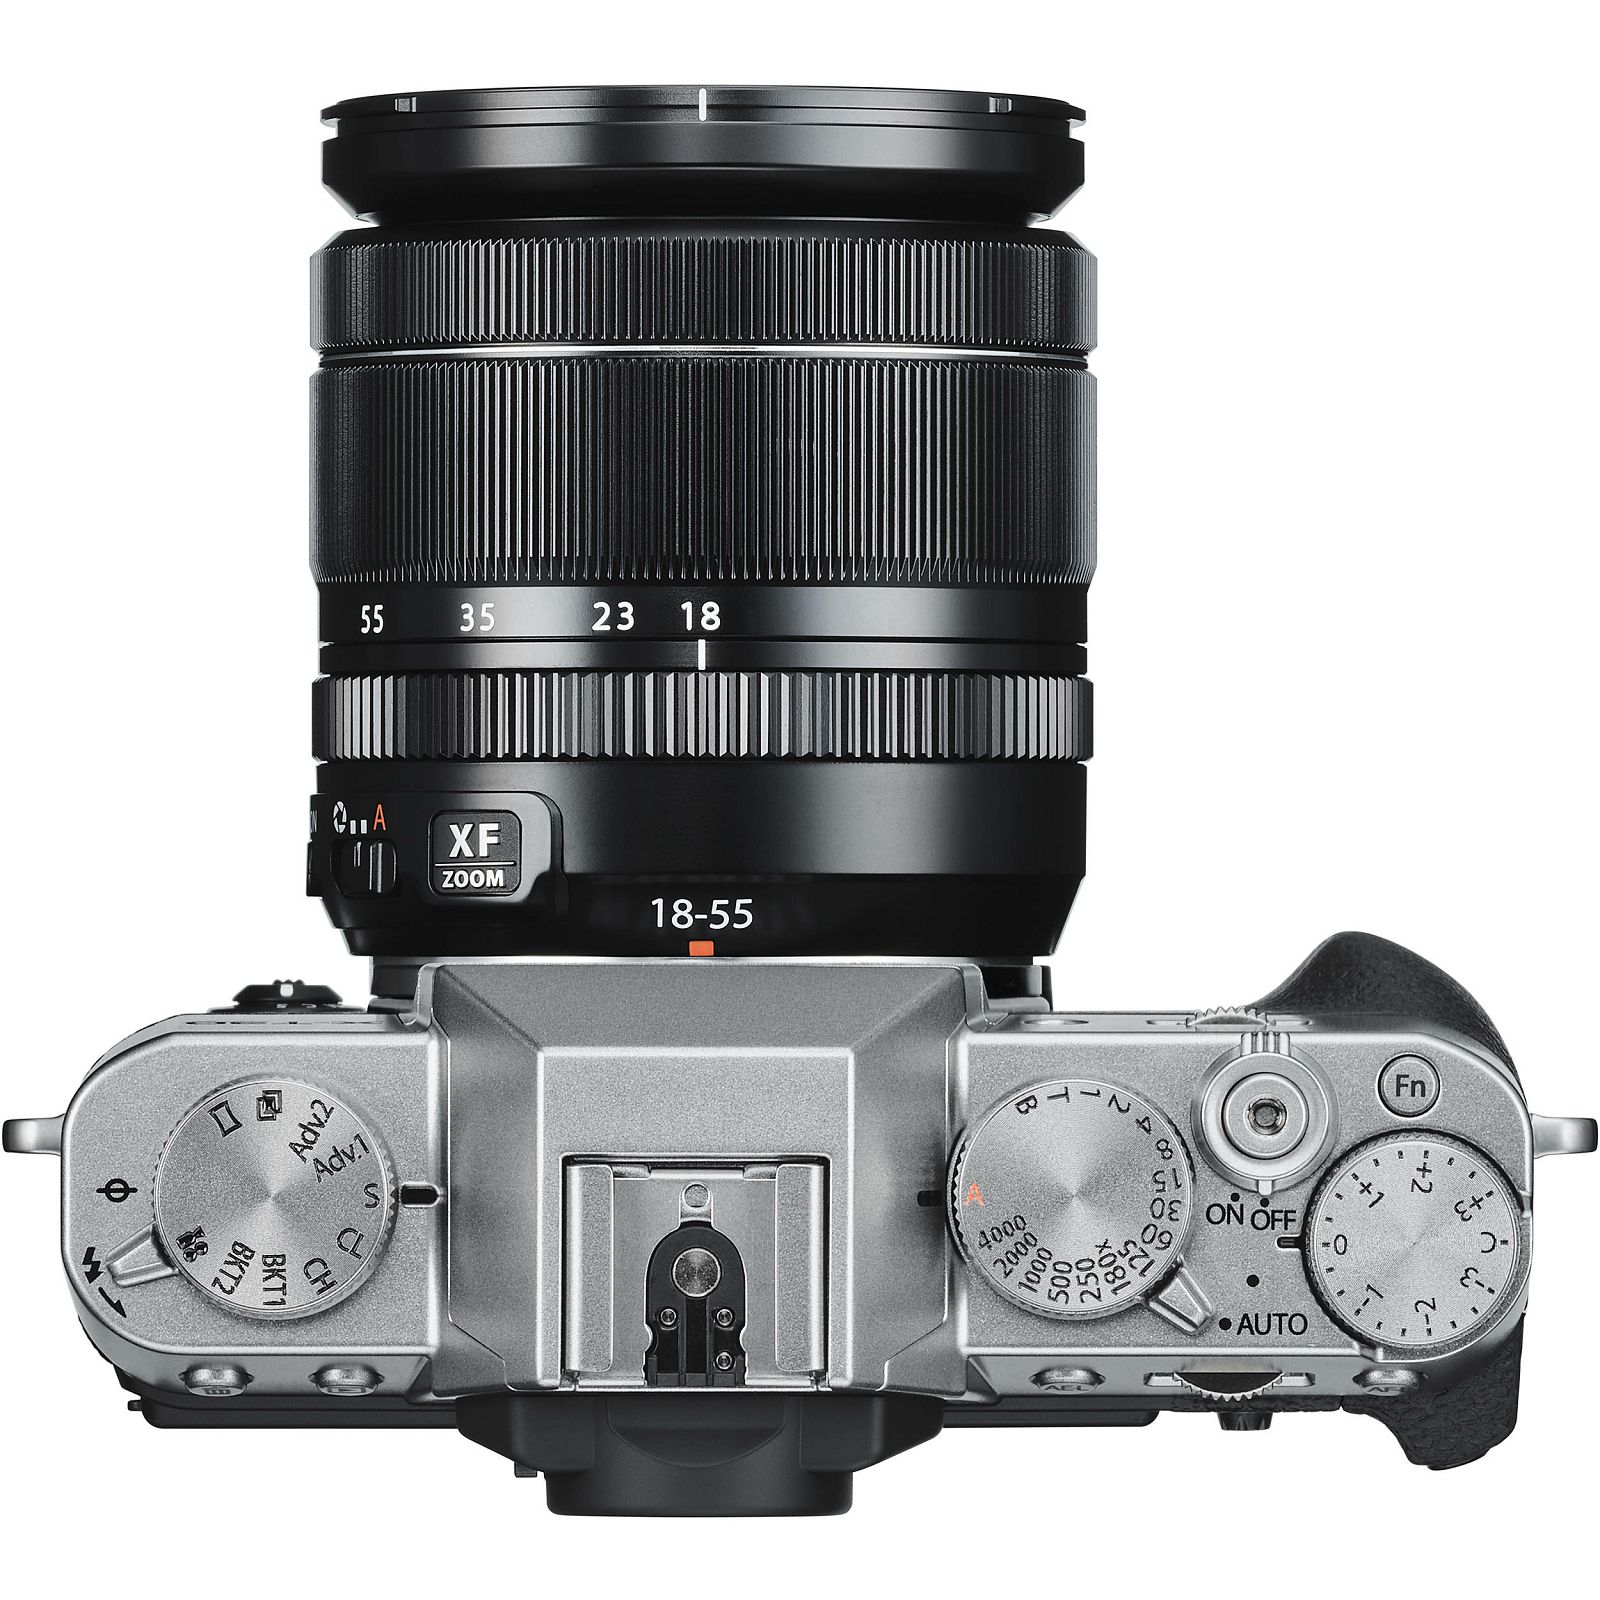 Fujifilm X-T30 + XF 18-55 f2.8-4 R LM OIS Silver srebreni digitalni mirrorless fotoaparat s objektivom 18-55mm Fuji (16619841)